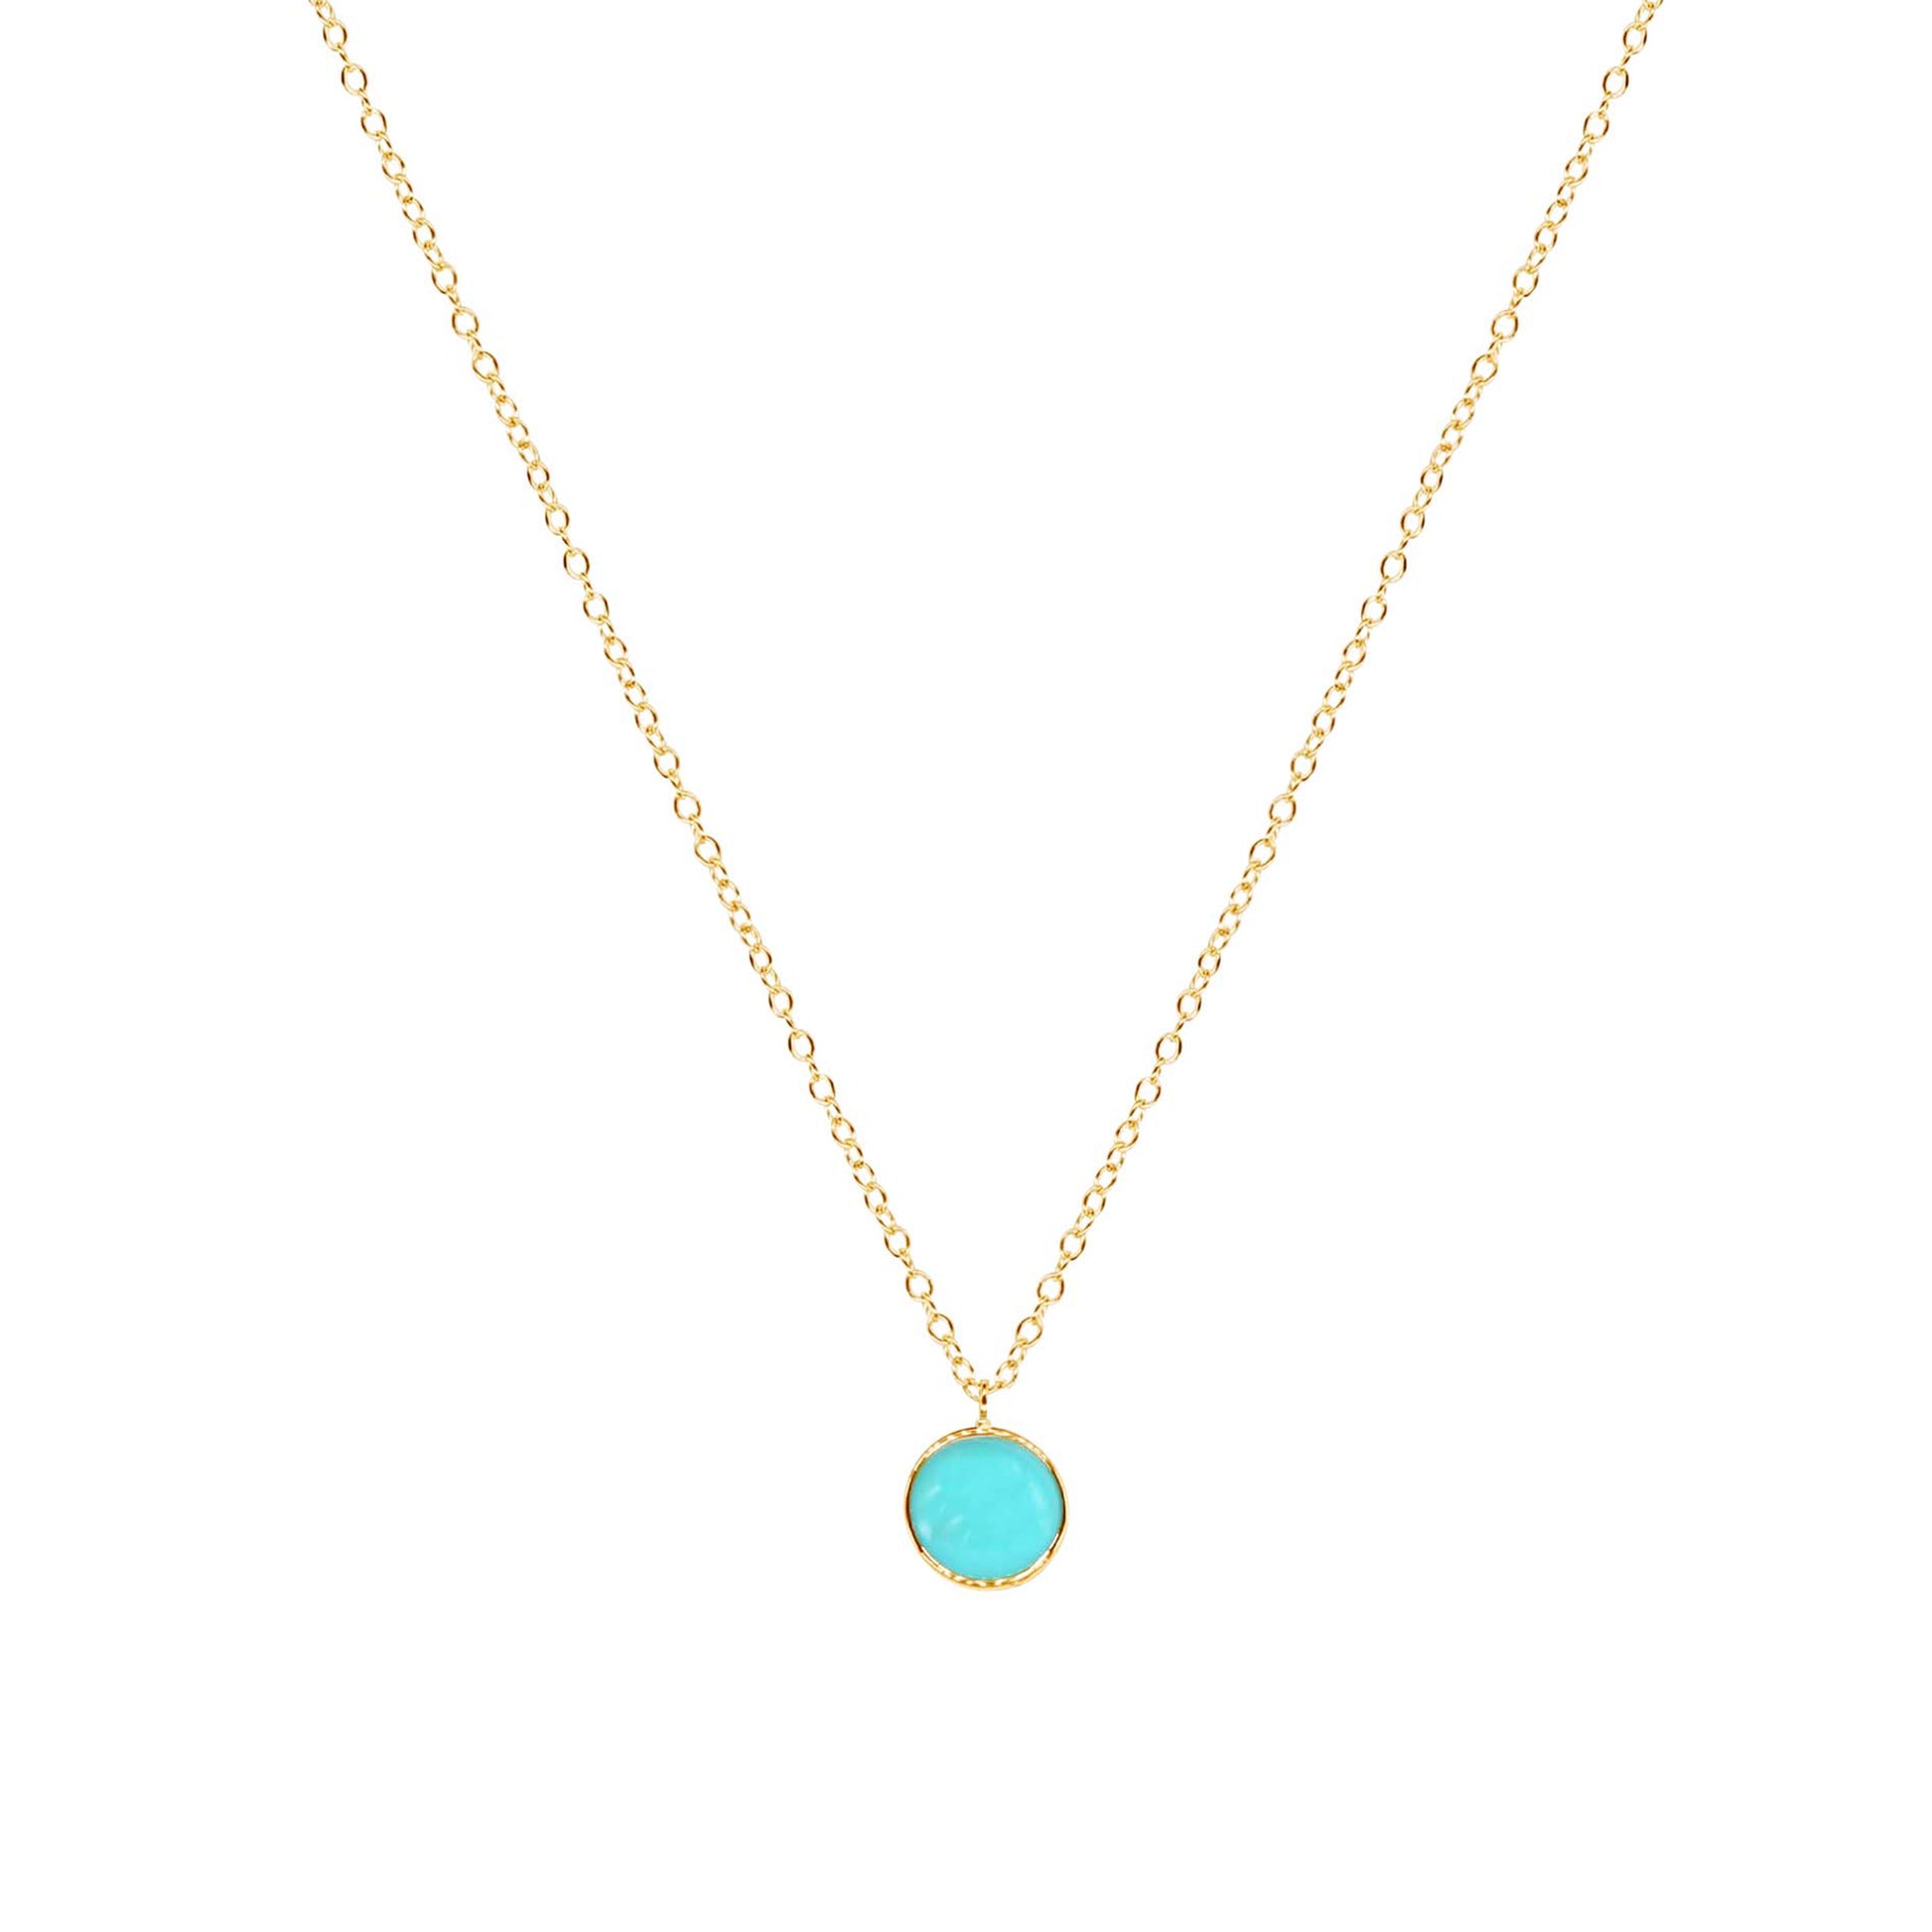 14k Turquoise Round Bezel Pendant Necklace 17"